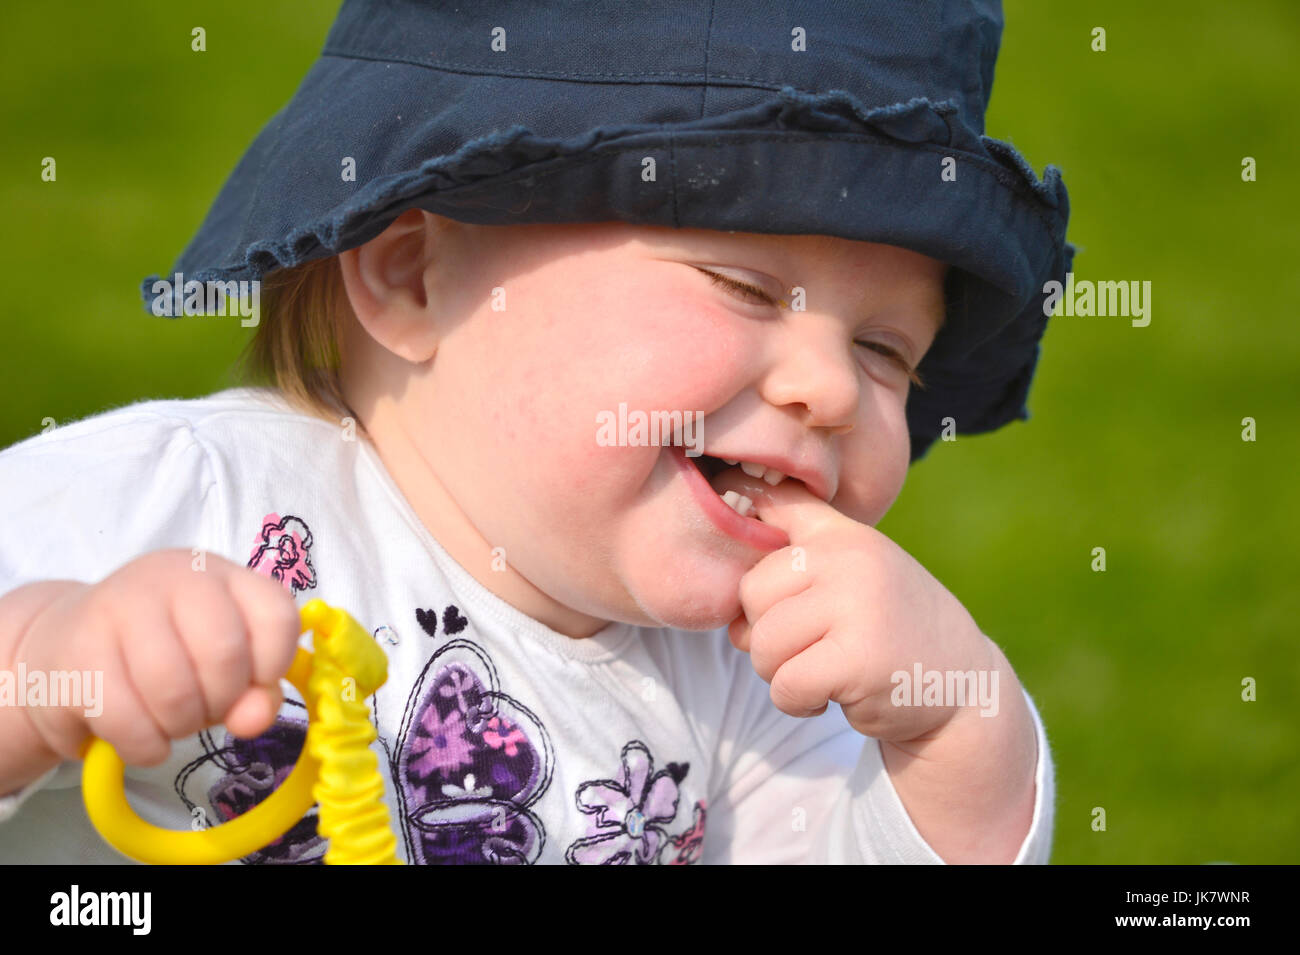 Fille d'un an avec le doigt en bouche wearing blue hat holding bat Banque D'Images